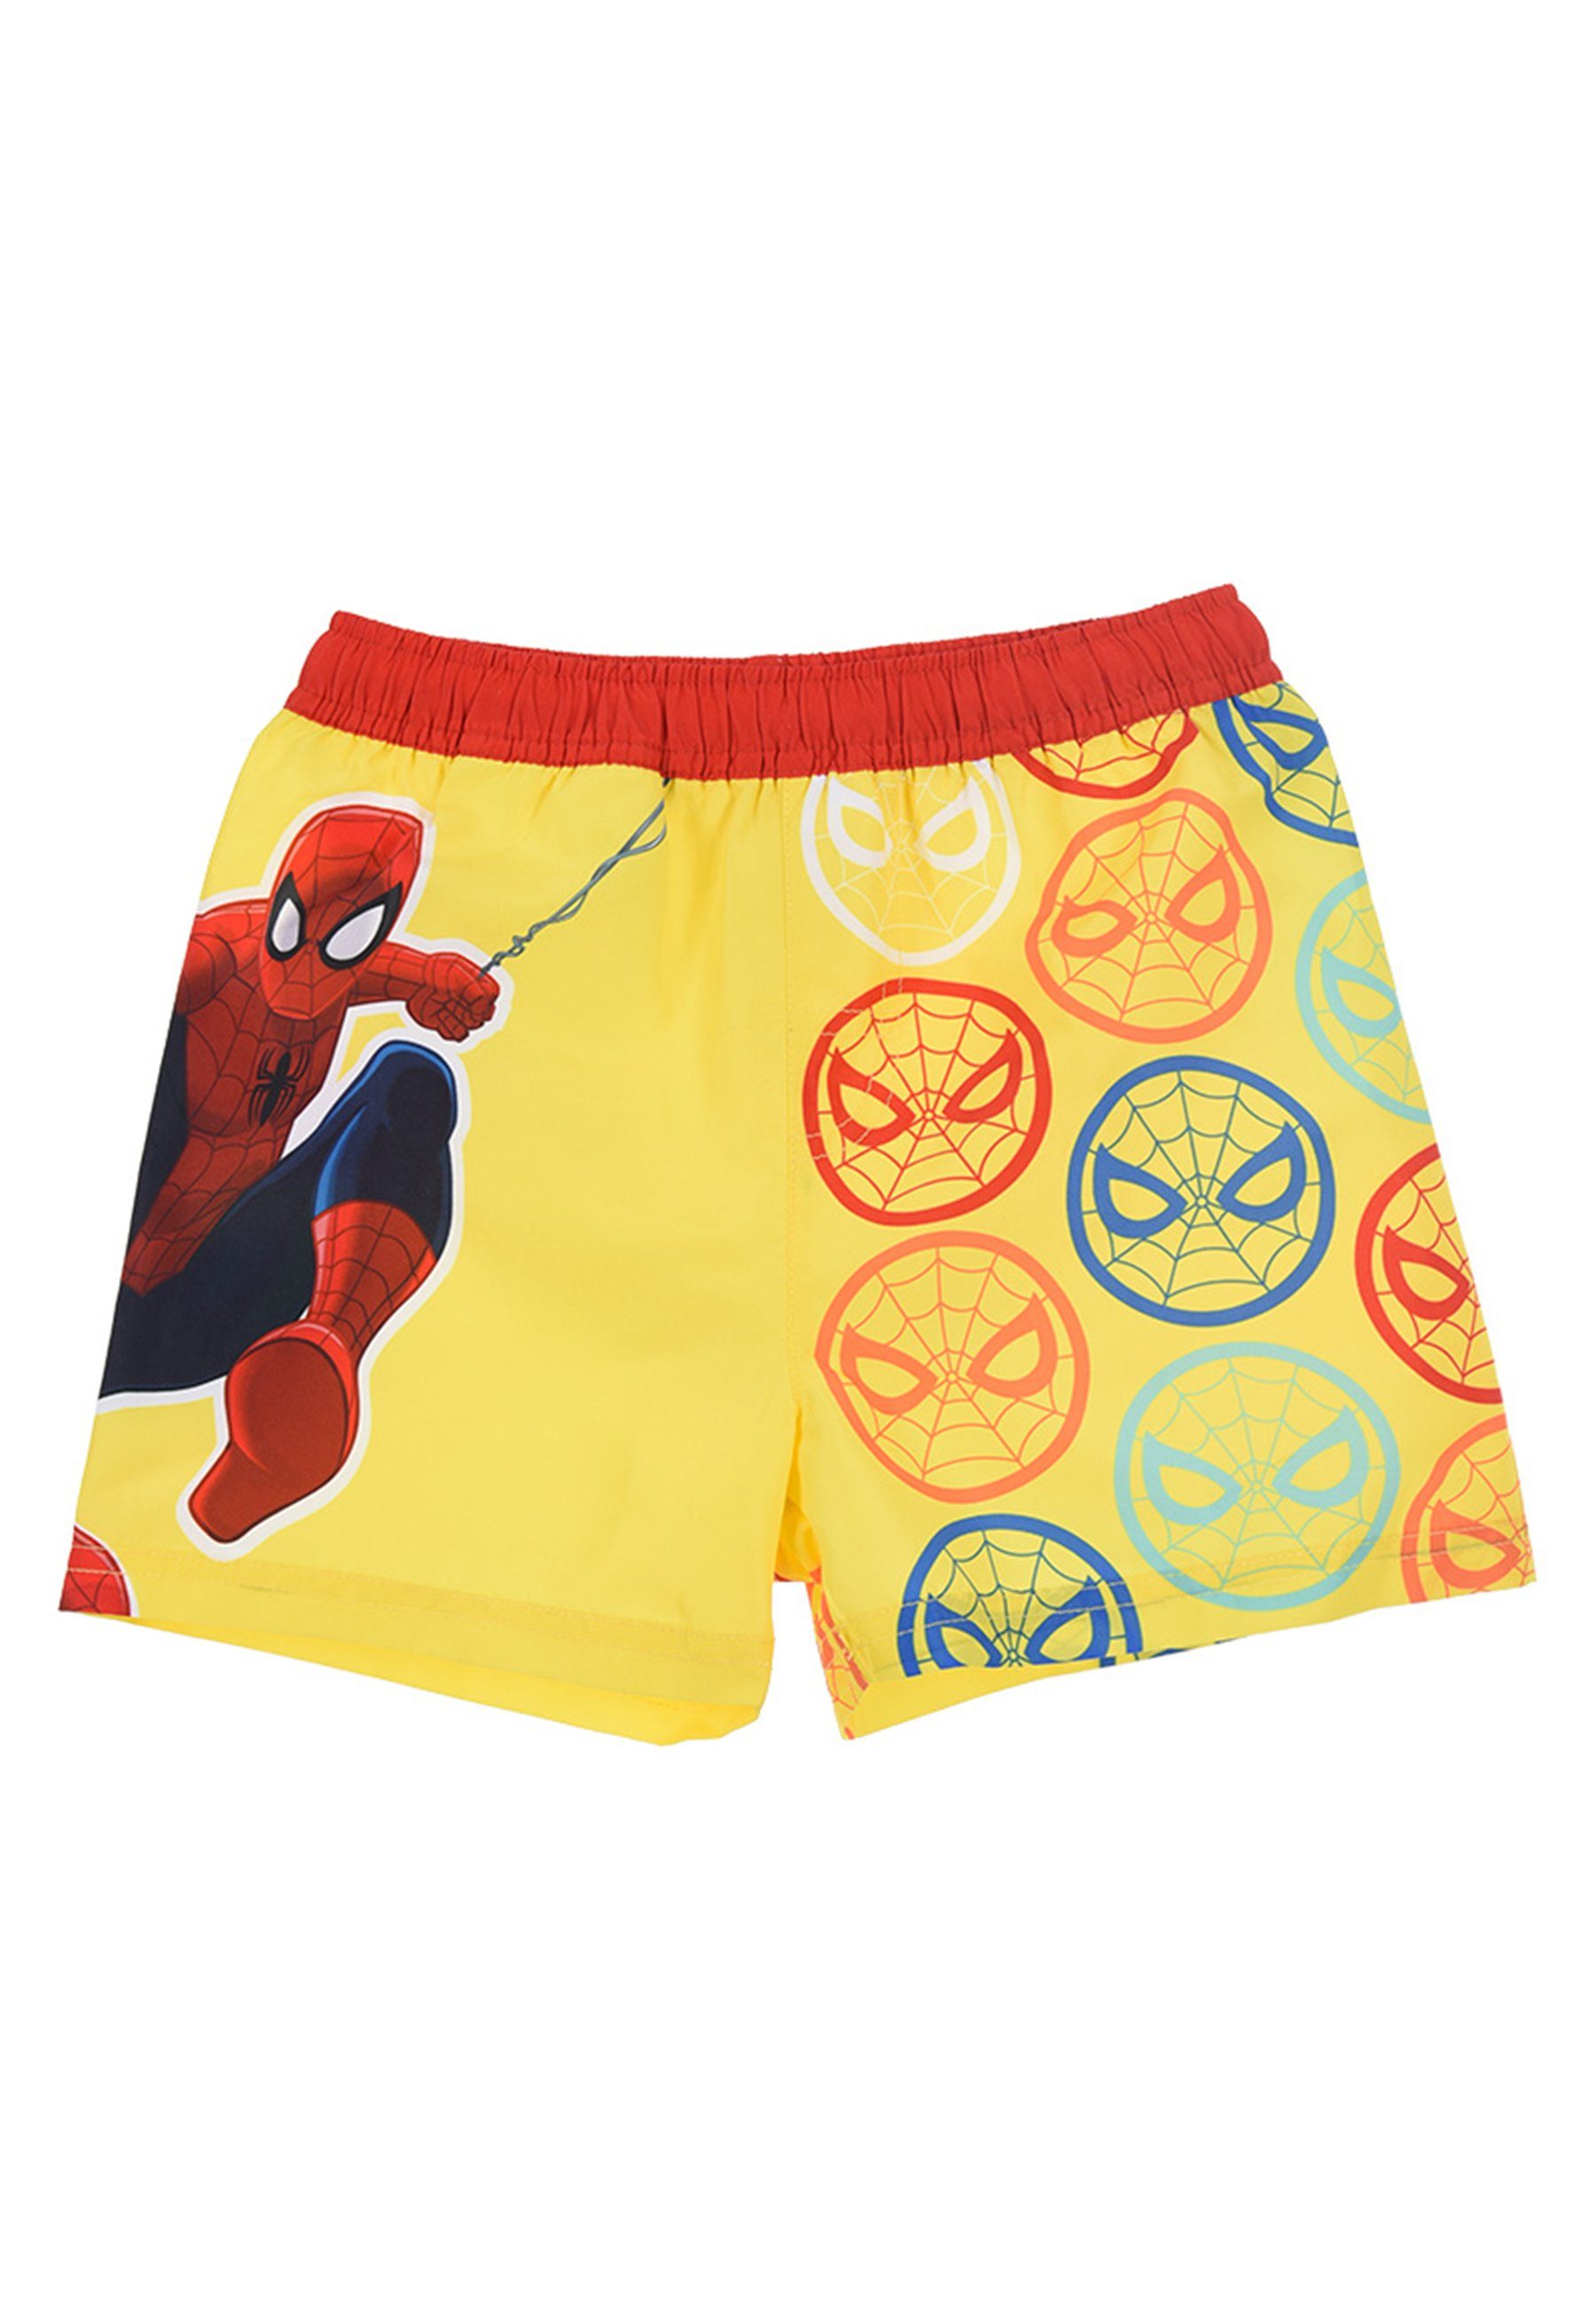 Spiderman Badeshorts Marvel Jungen Kinder Bermuda-Shorts Badehose Badepants Gelb